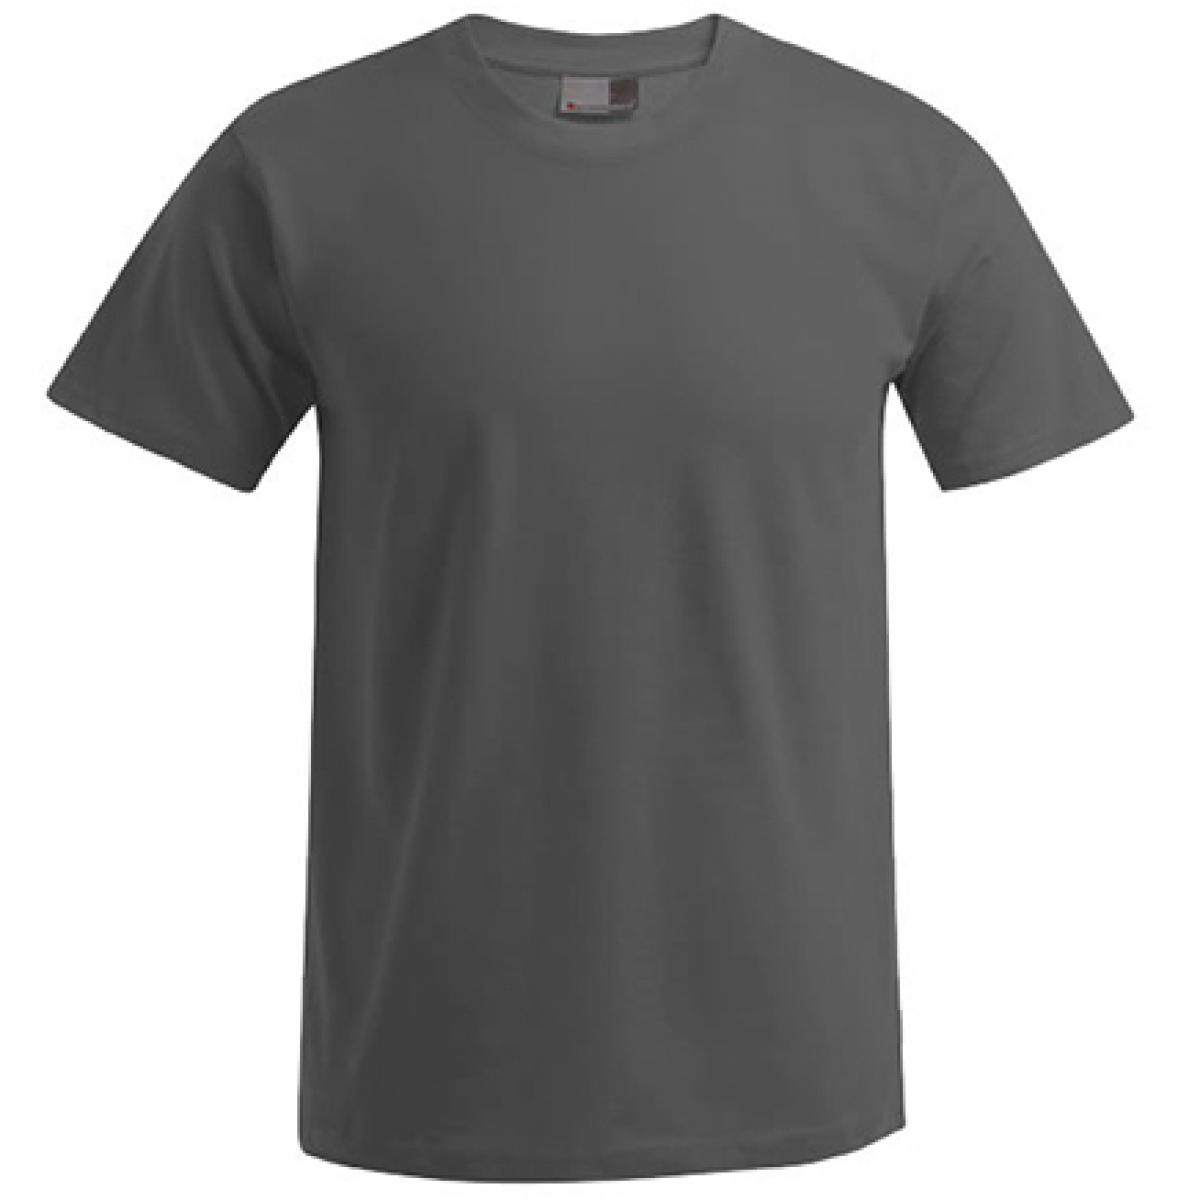 Hersteller: Promodoro Herstellernummer: 3000/3099 Artikelbezeichnung: Men´s Premium Herren T-Shirt - bis 5XL Farbe: Graphite (Solid)